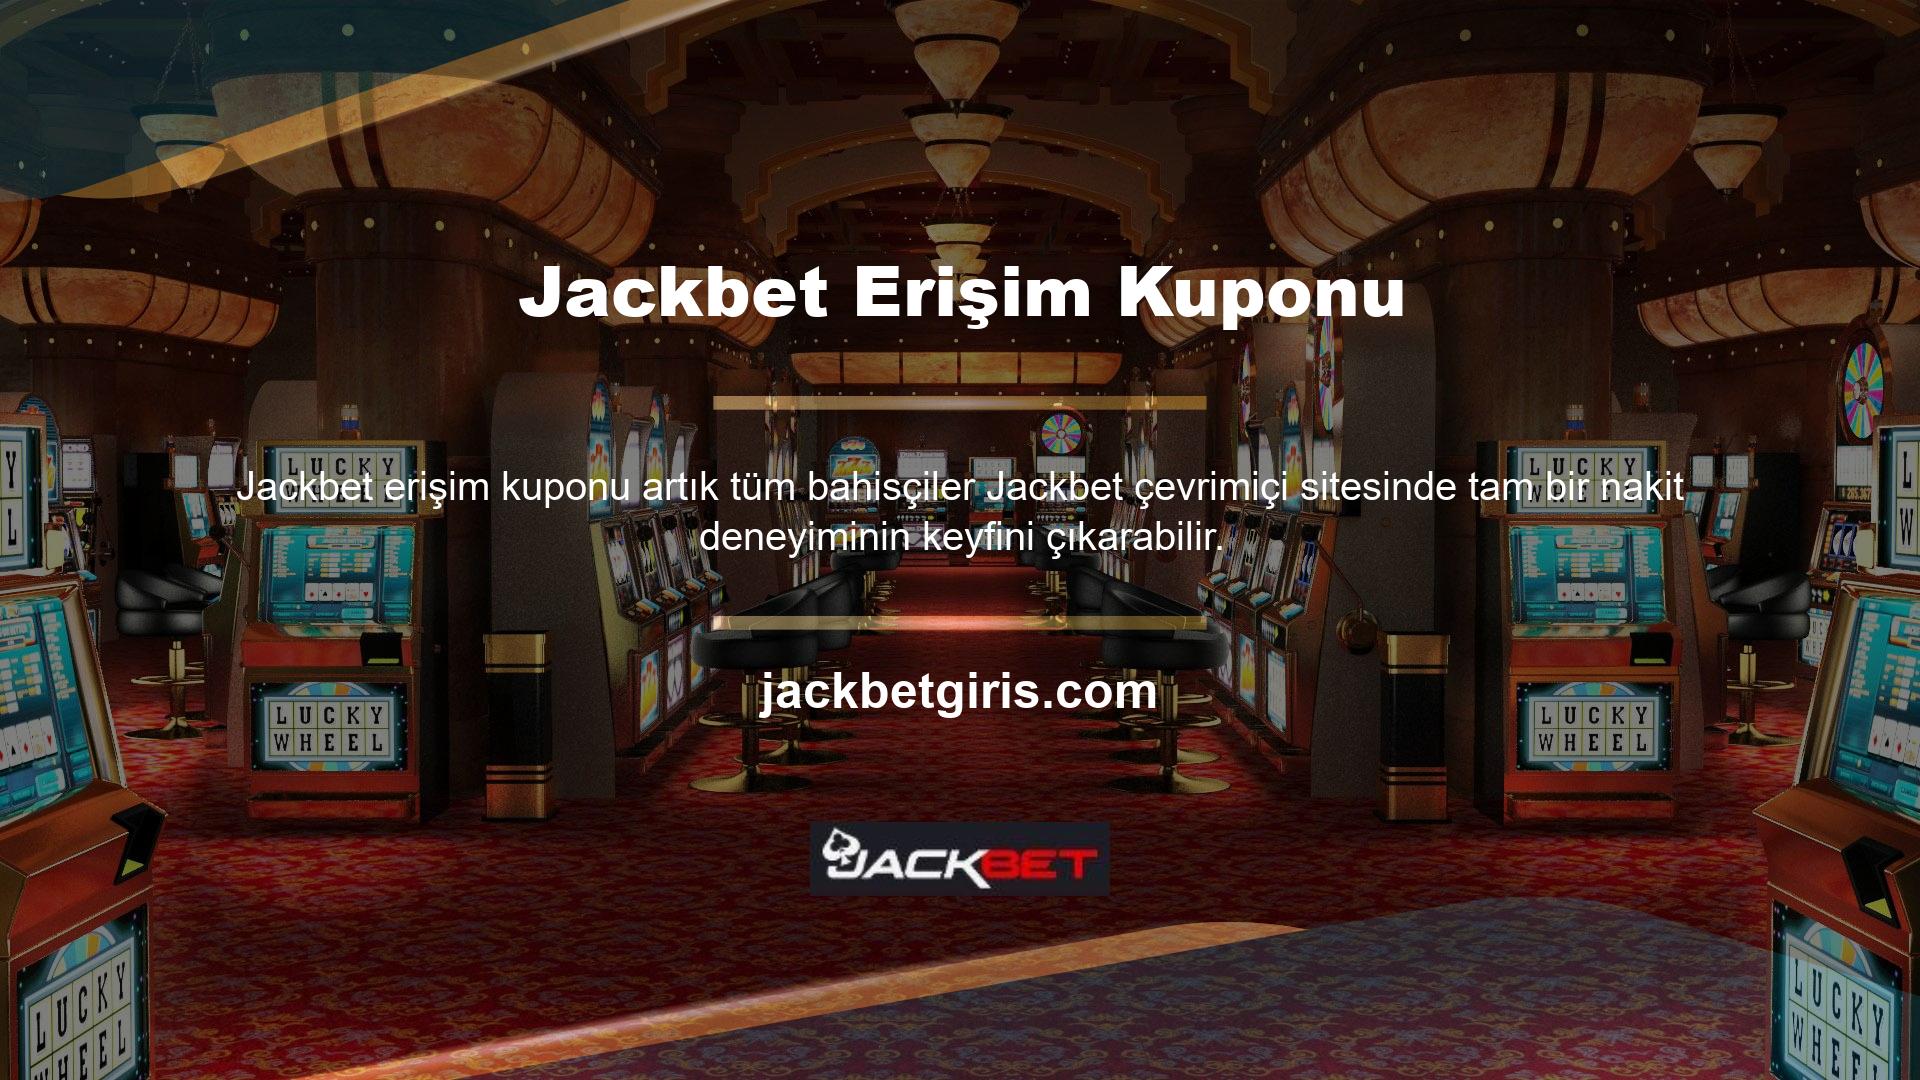 Jackbet, sektördeki en büyük casino merkezlerinden biridir ve öncelikle bölgede faaliyet gösterme lisansına sahiptir